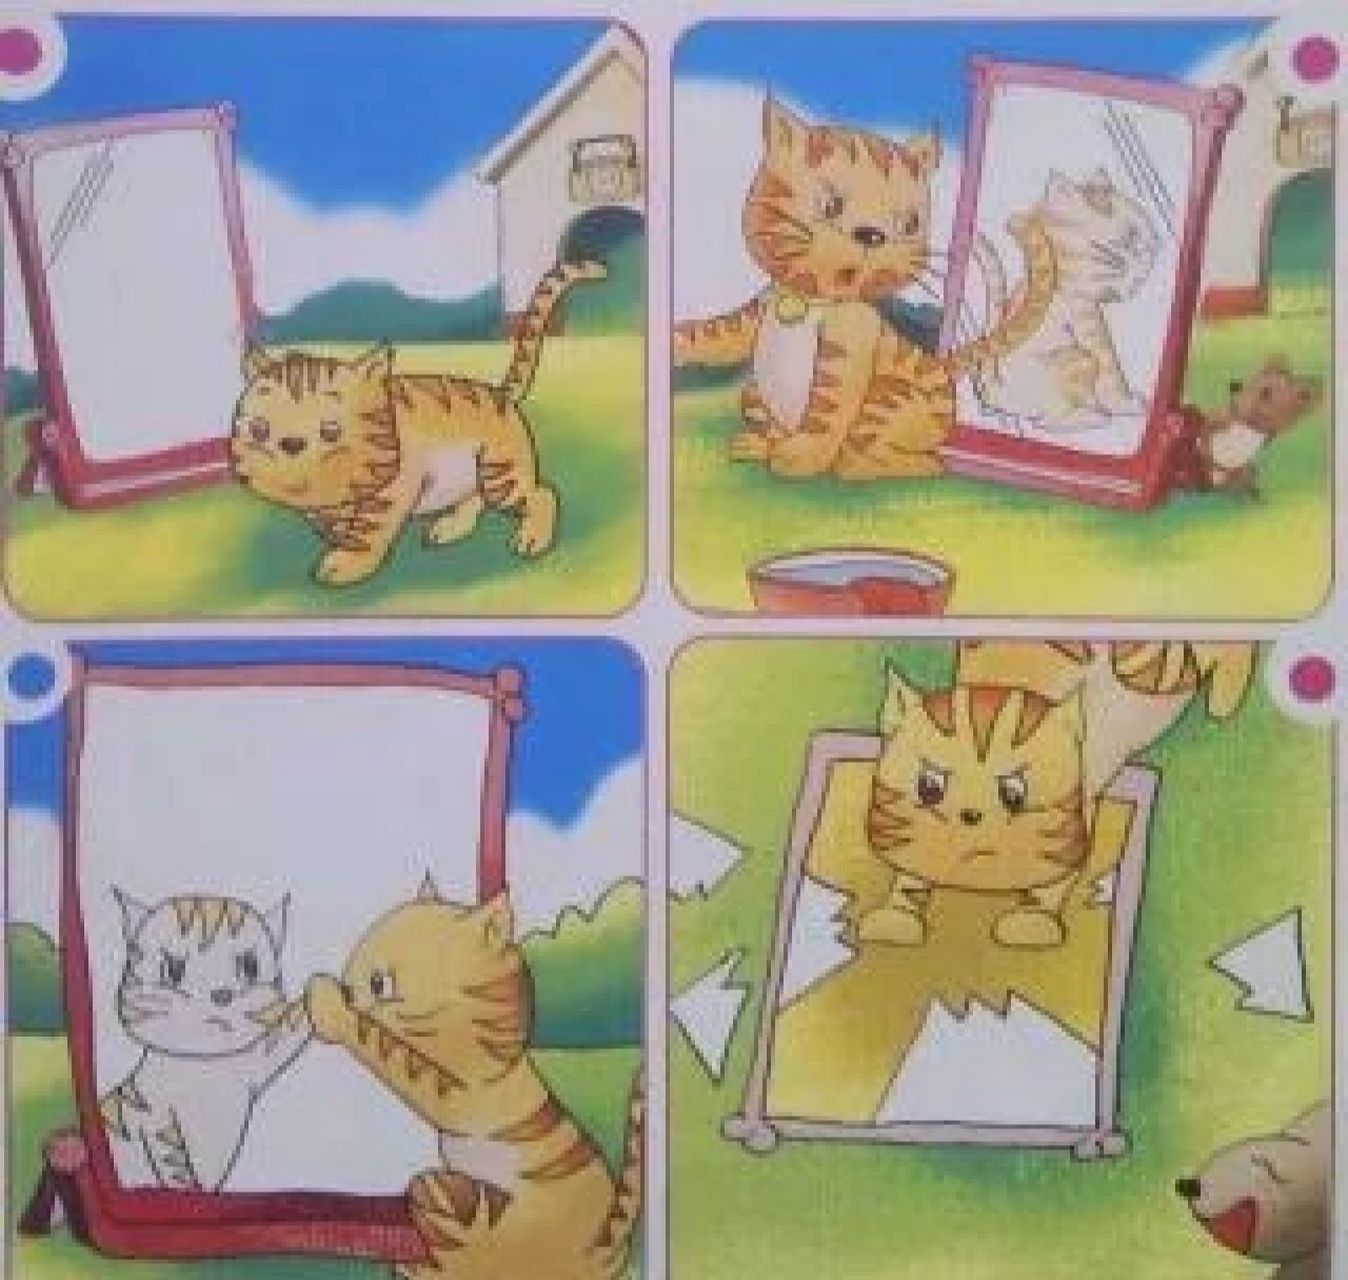 小花猫照镜子故事图片